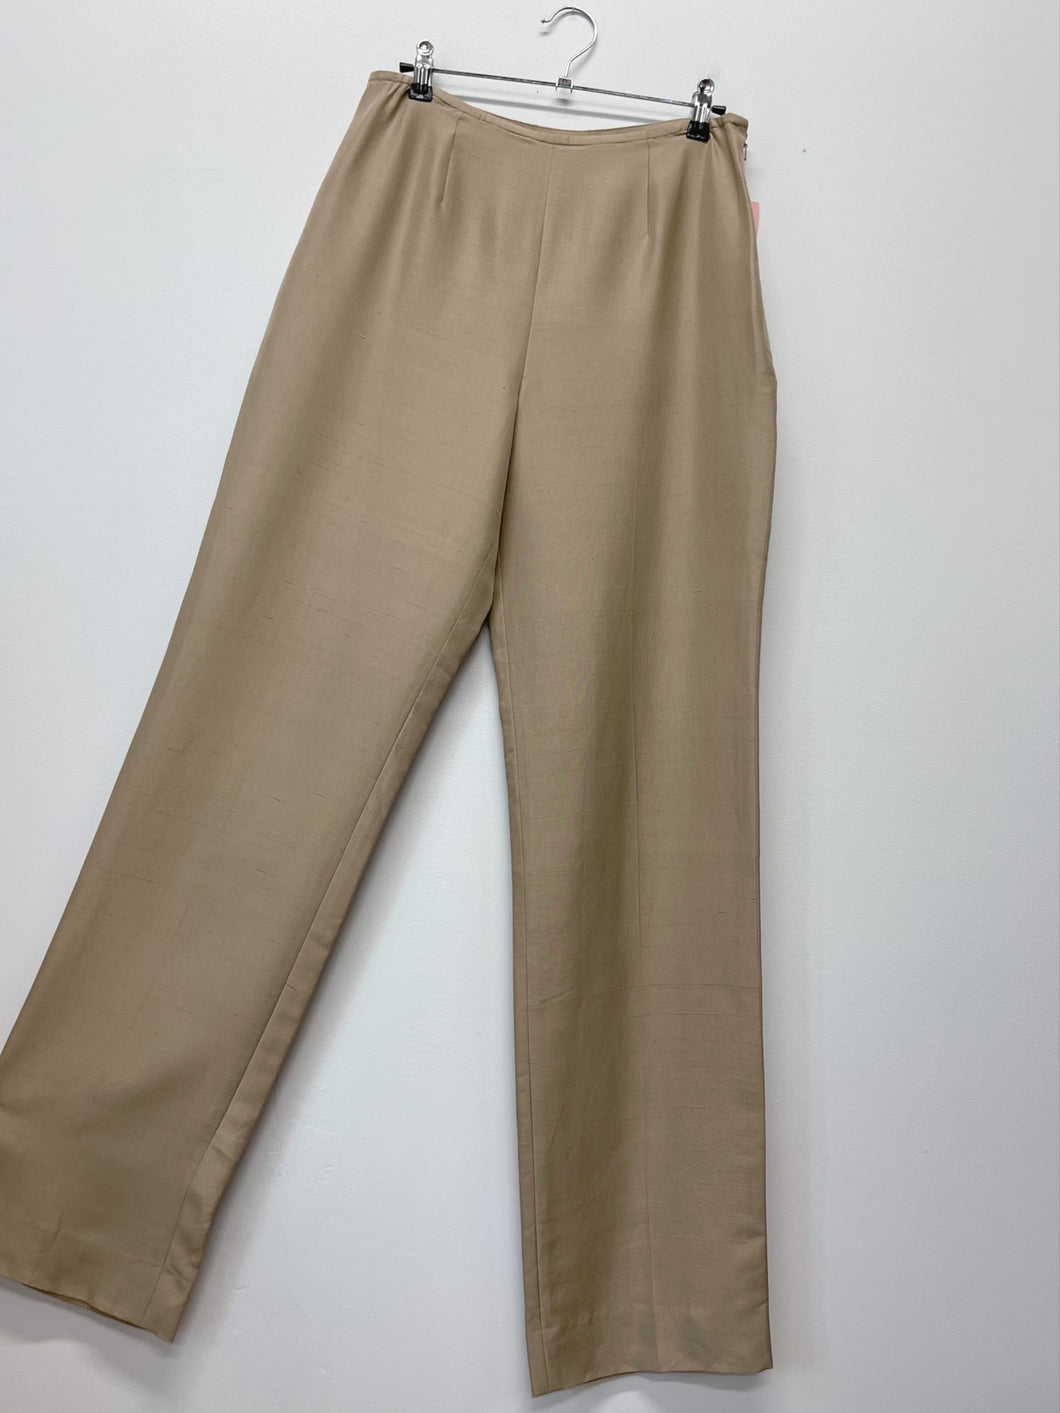 90s Beige Silk Pants (W29